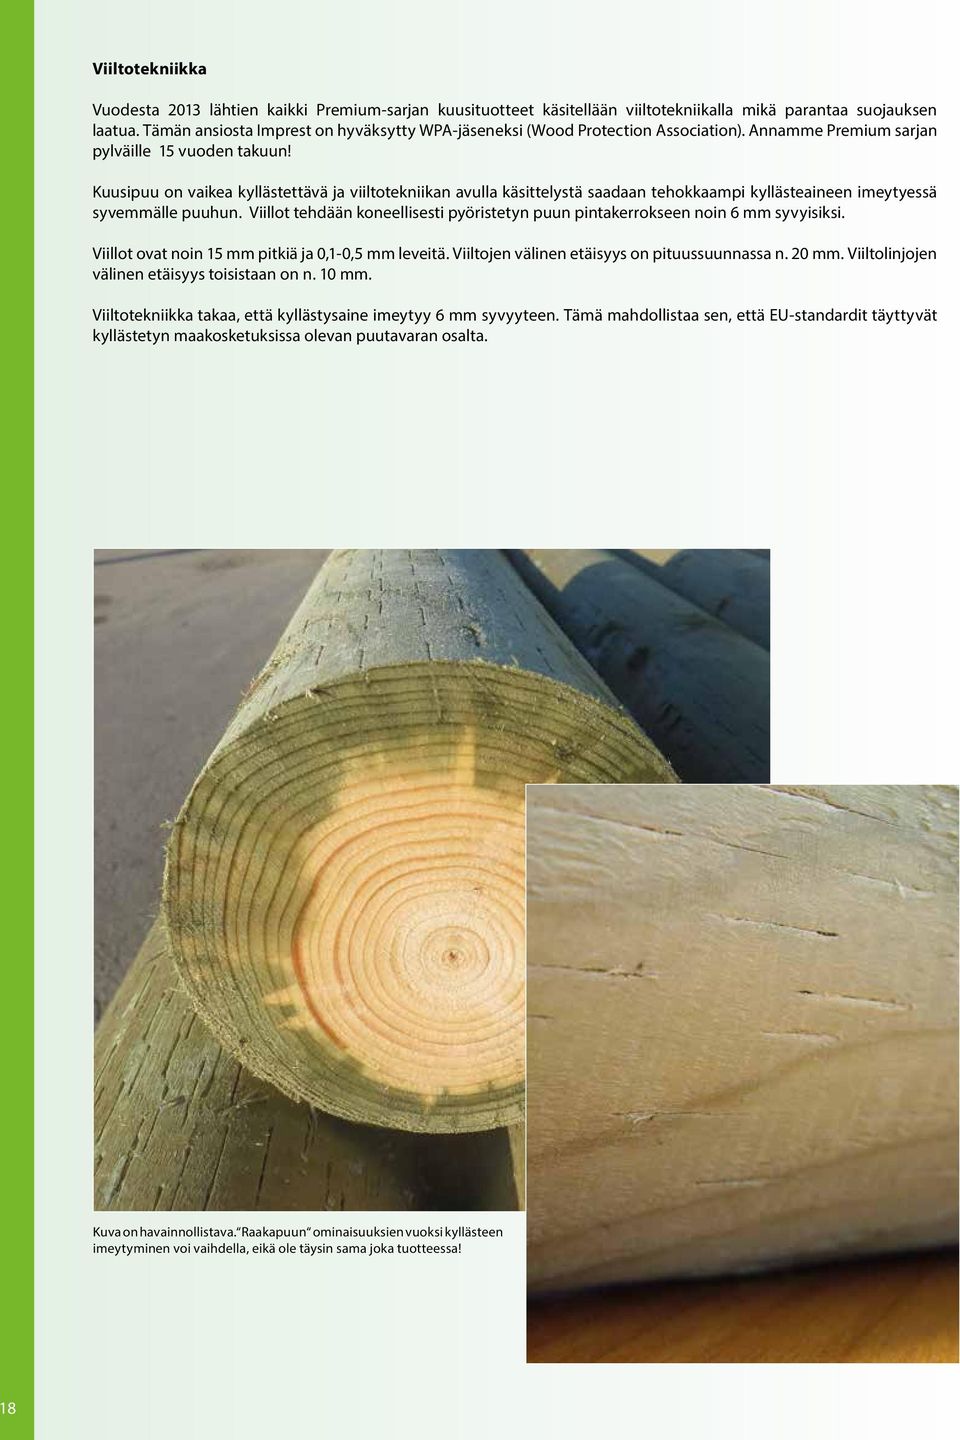 Kuusipuu on vaikea kyllästettävä ja viiltotekniikan avulla käsittelystä saadaan tehokkaampi kyllästeaineen imeytyessä syvemmälle puuhun.